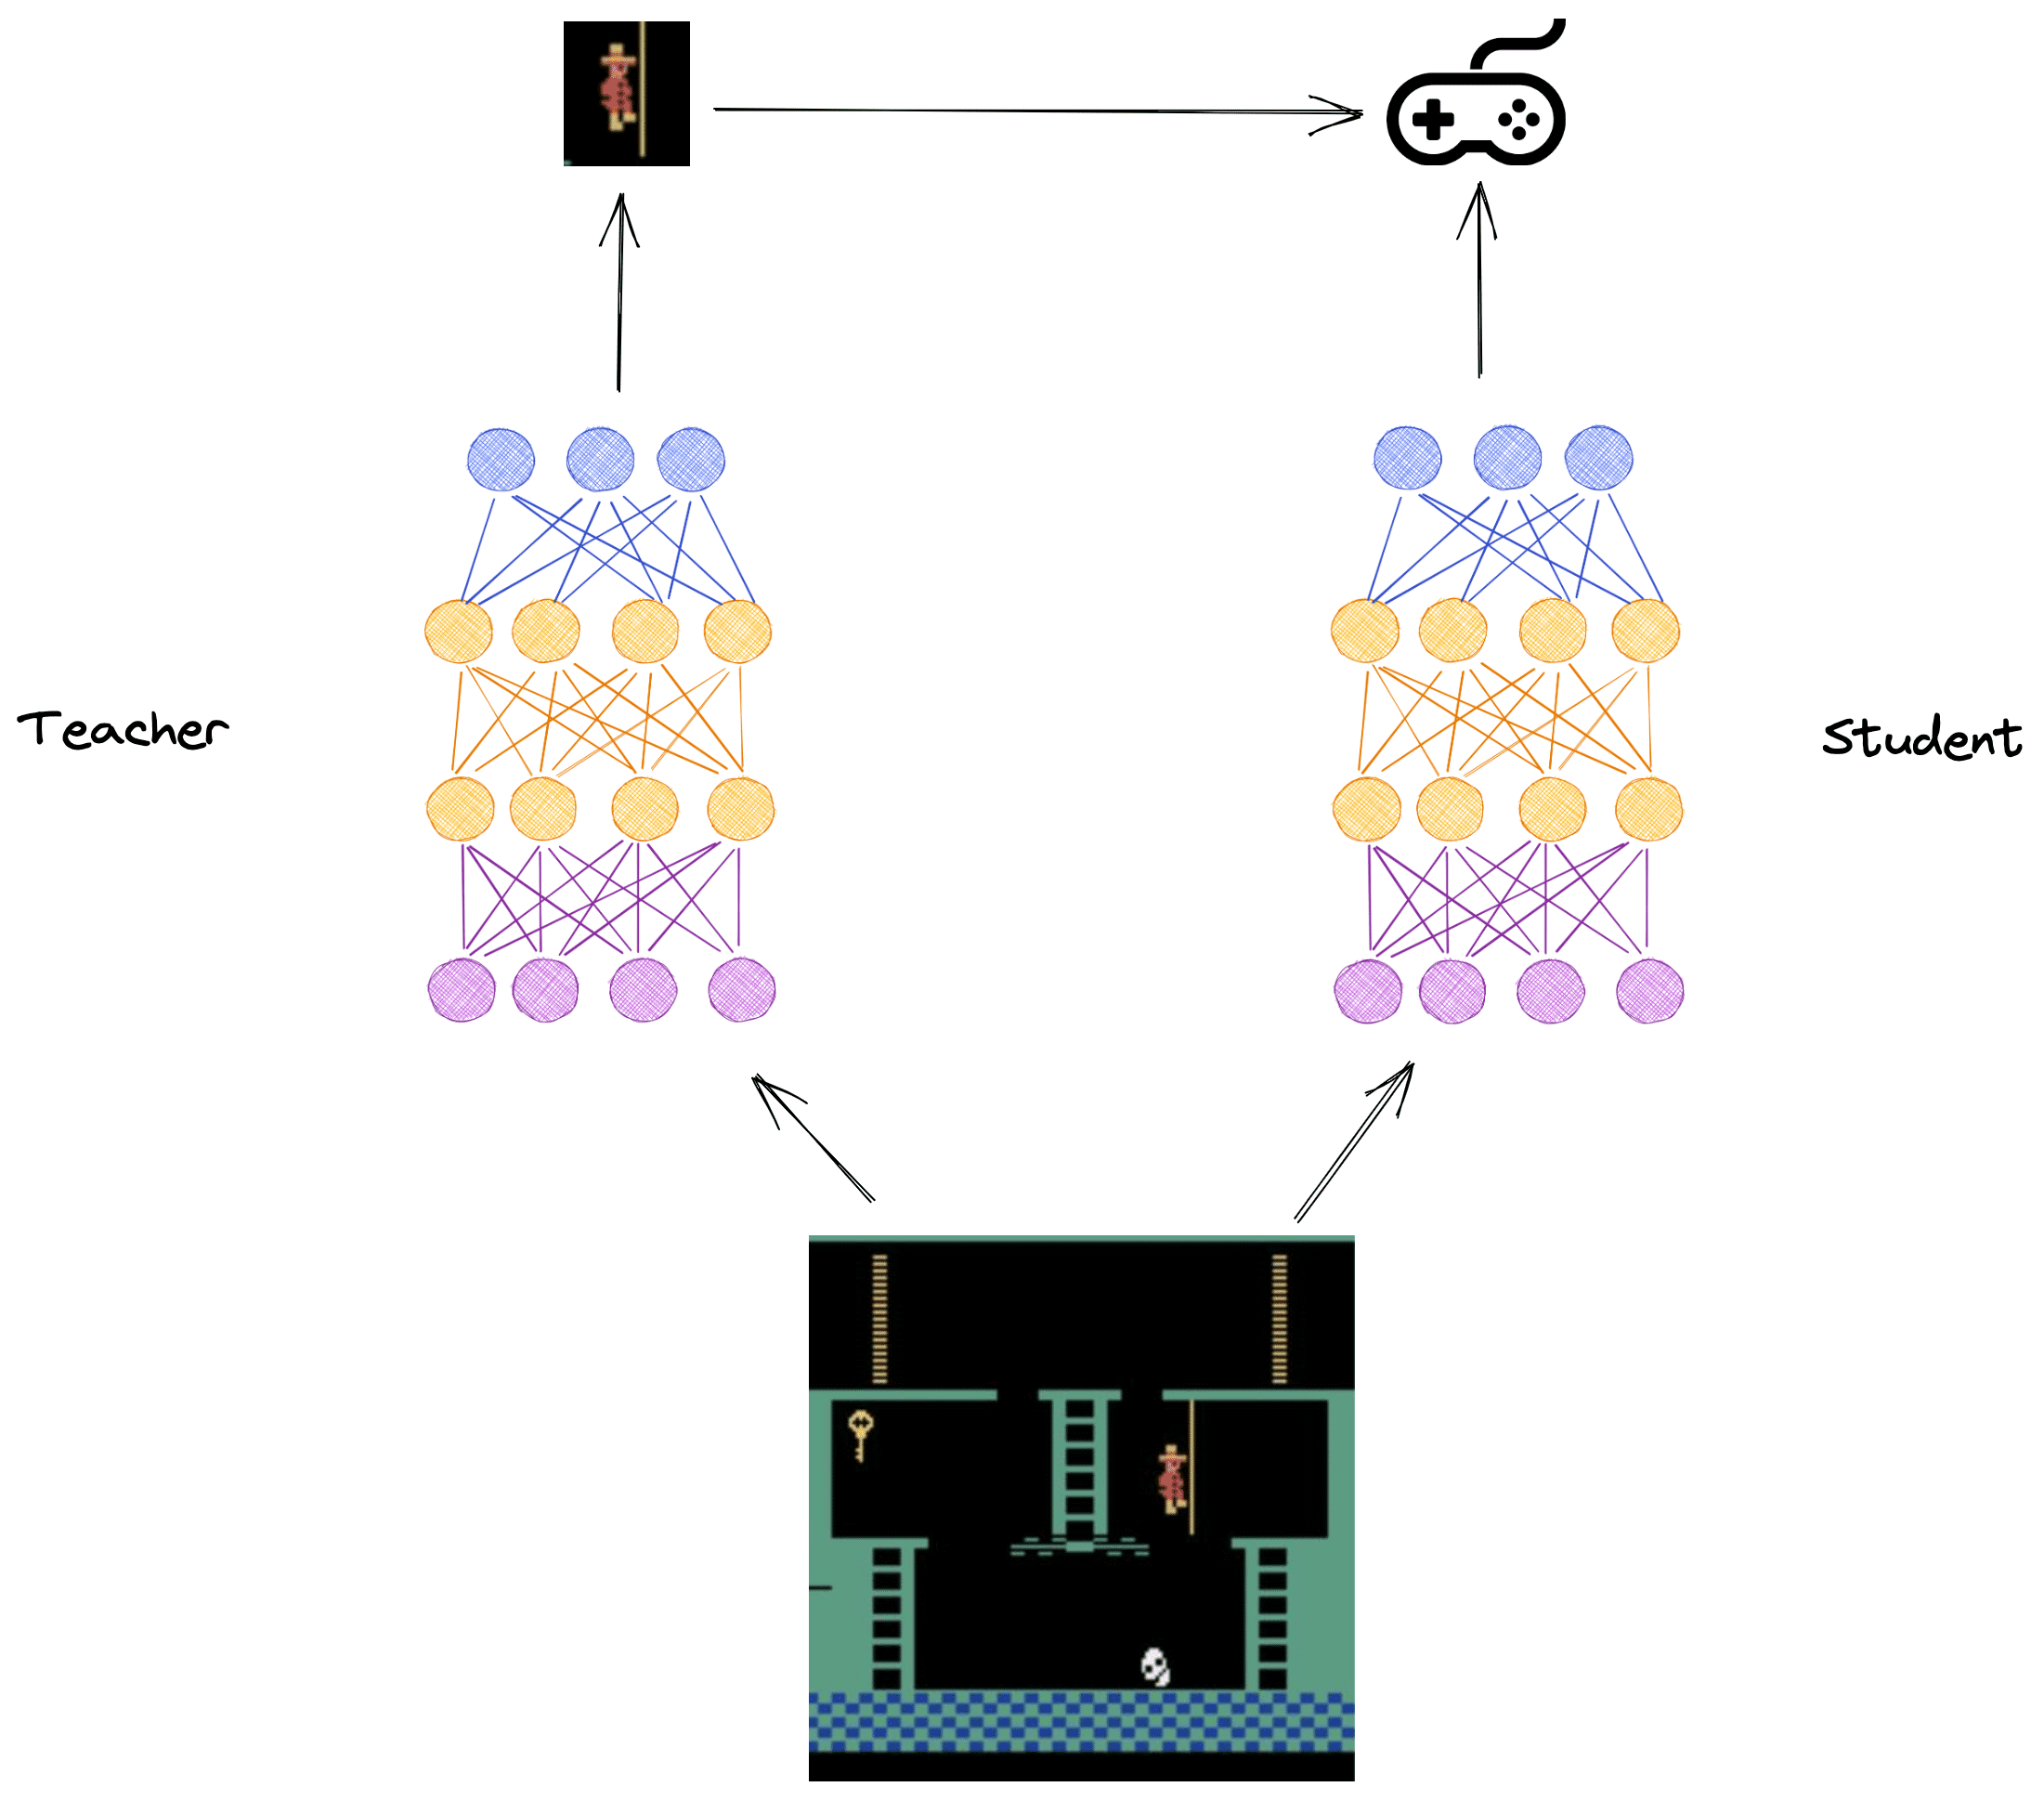 Figura: La venganza de Montezuma (izquierda) y las redes neuronales del profesor y el estudiante (derecha)